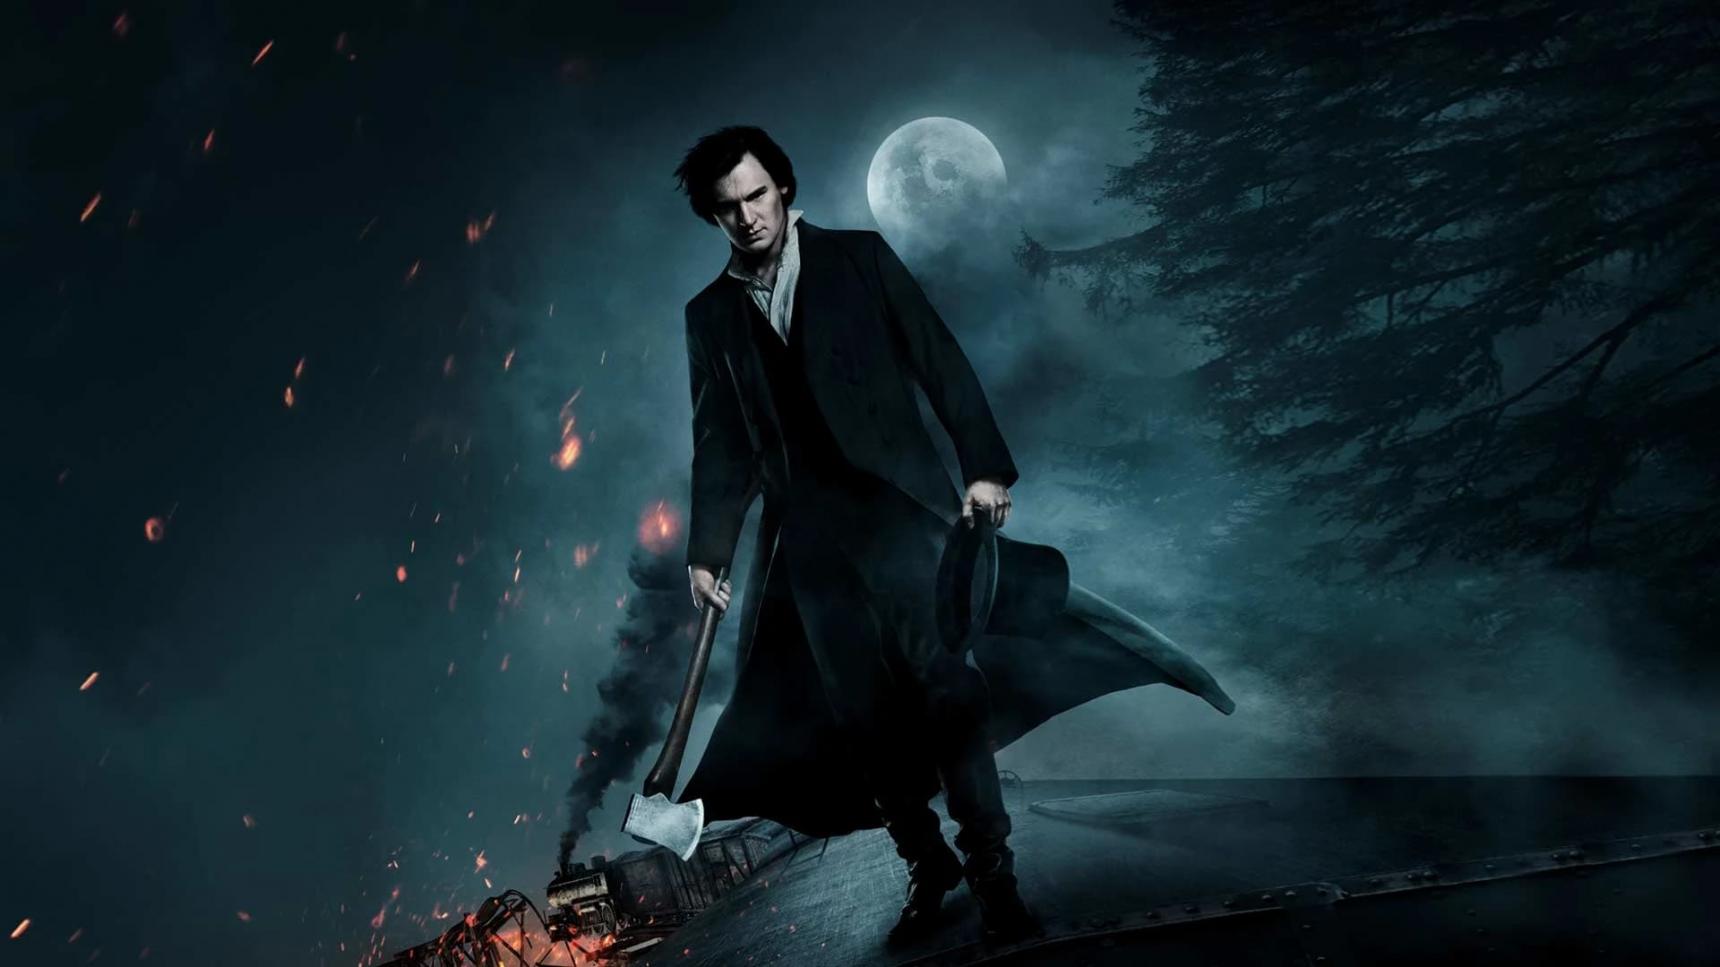 poster de Abraham Lincoln: Cazador de vampiros